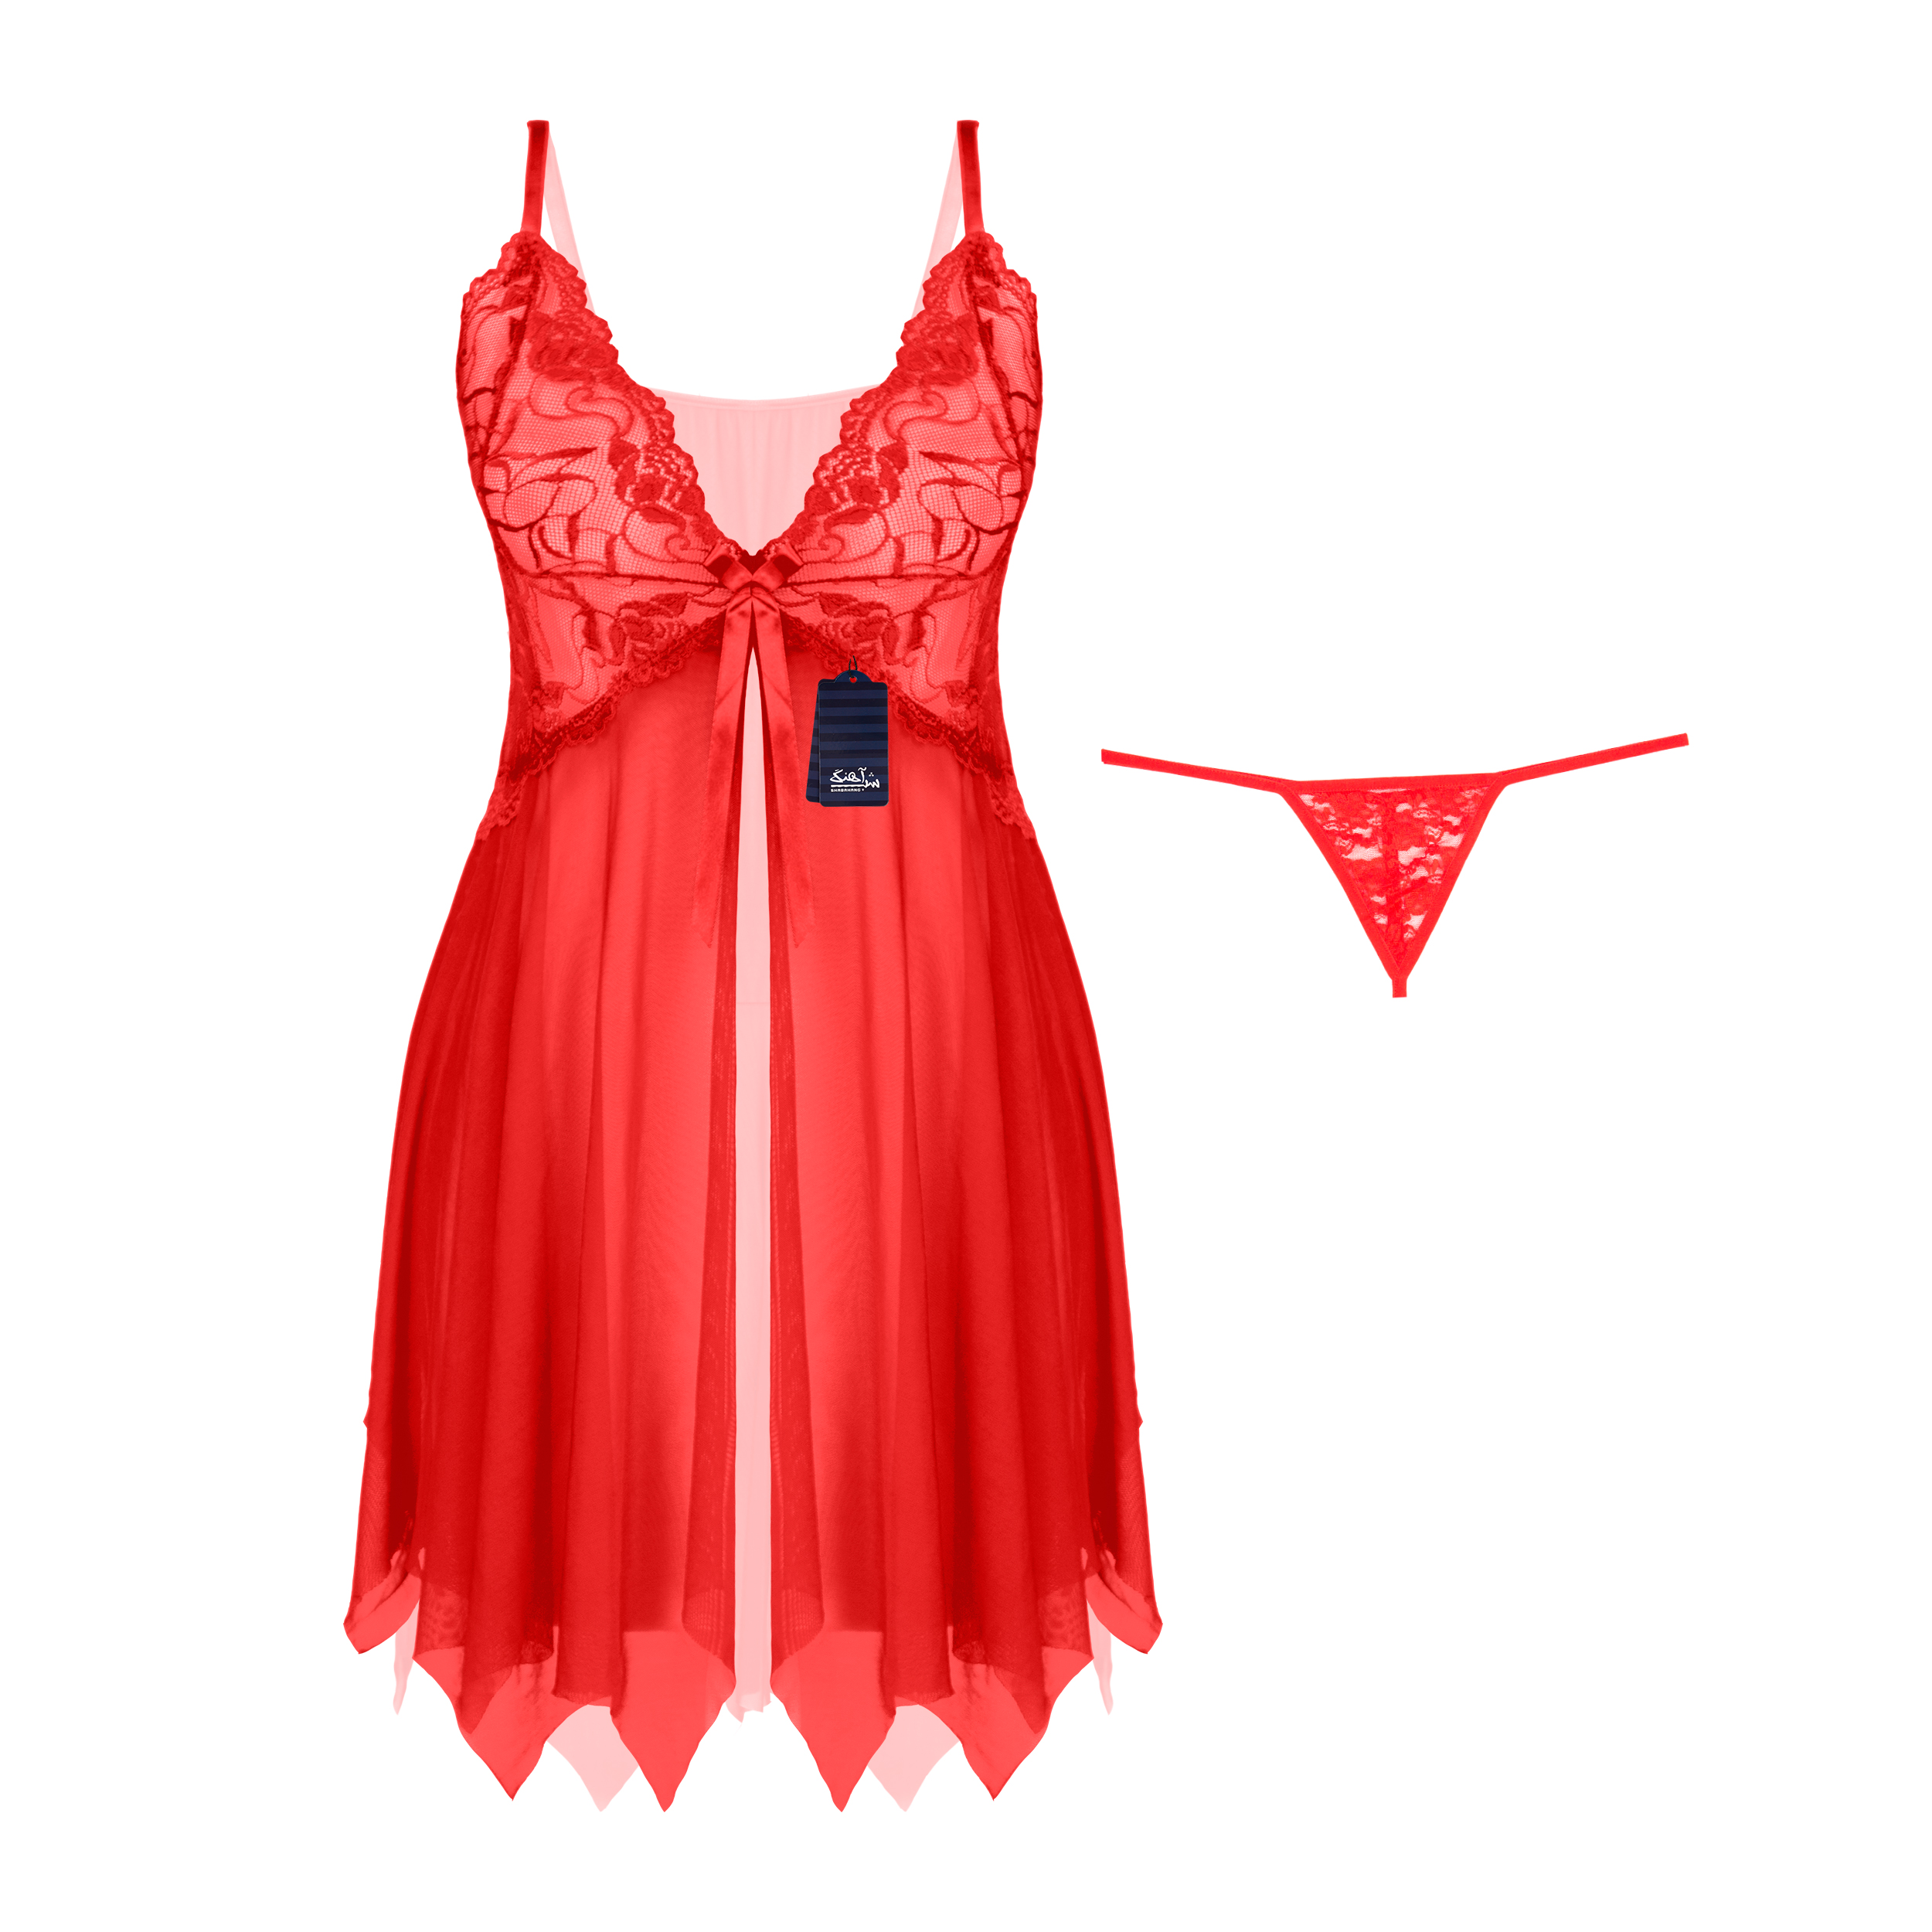 لباس خواب زنانه شباهنگ مدل R APACHE رنگ قرمز